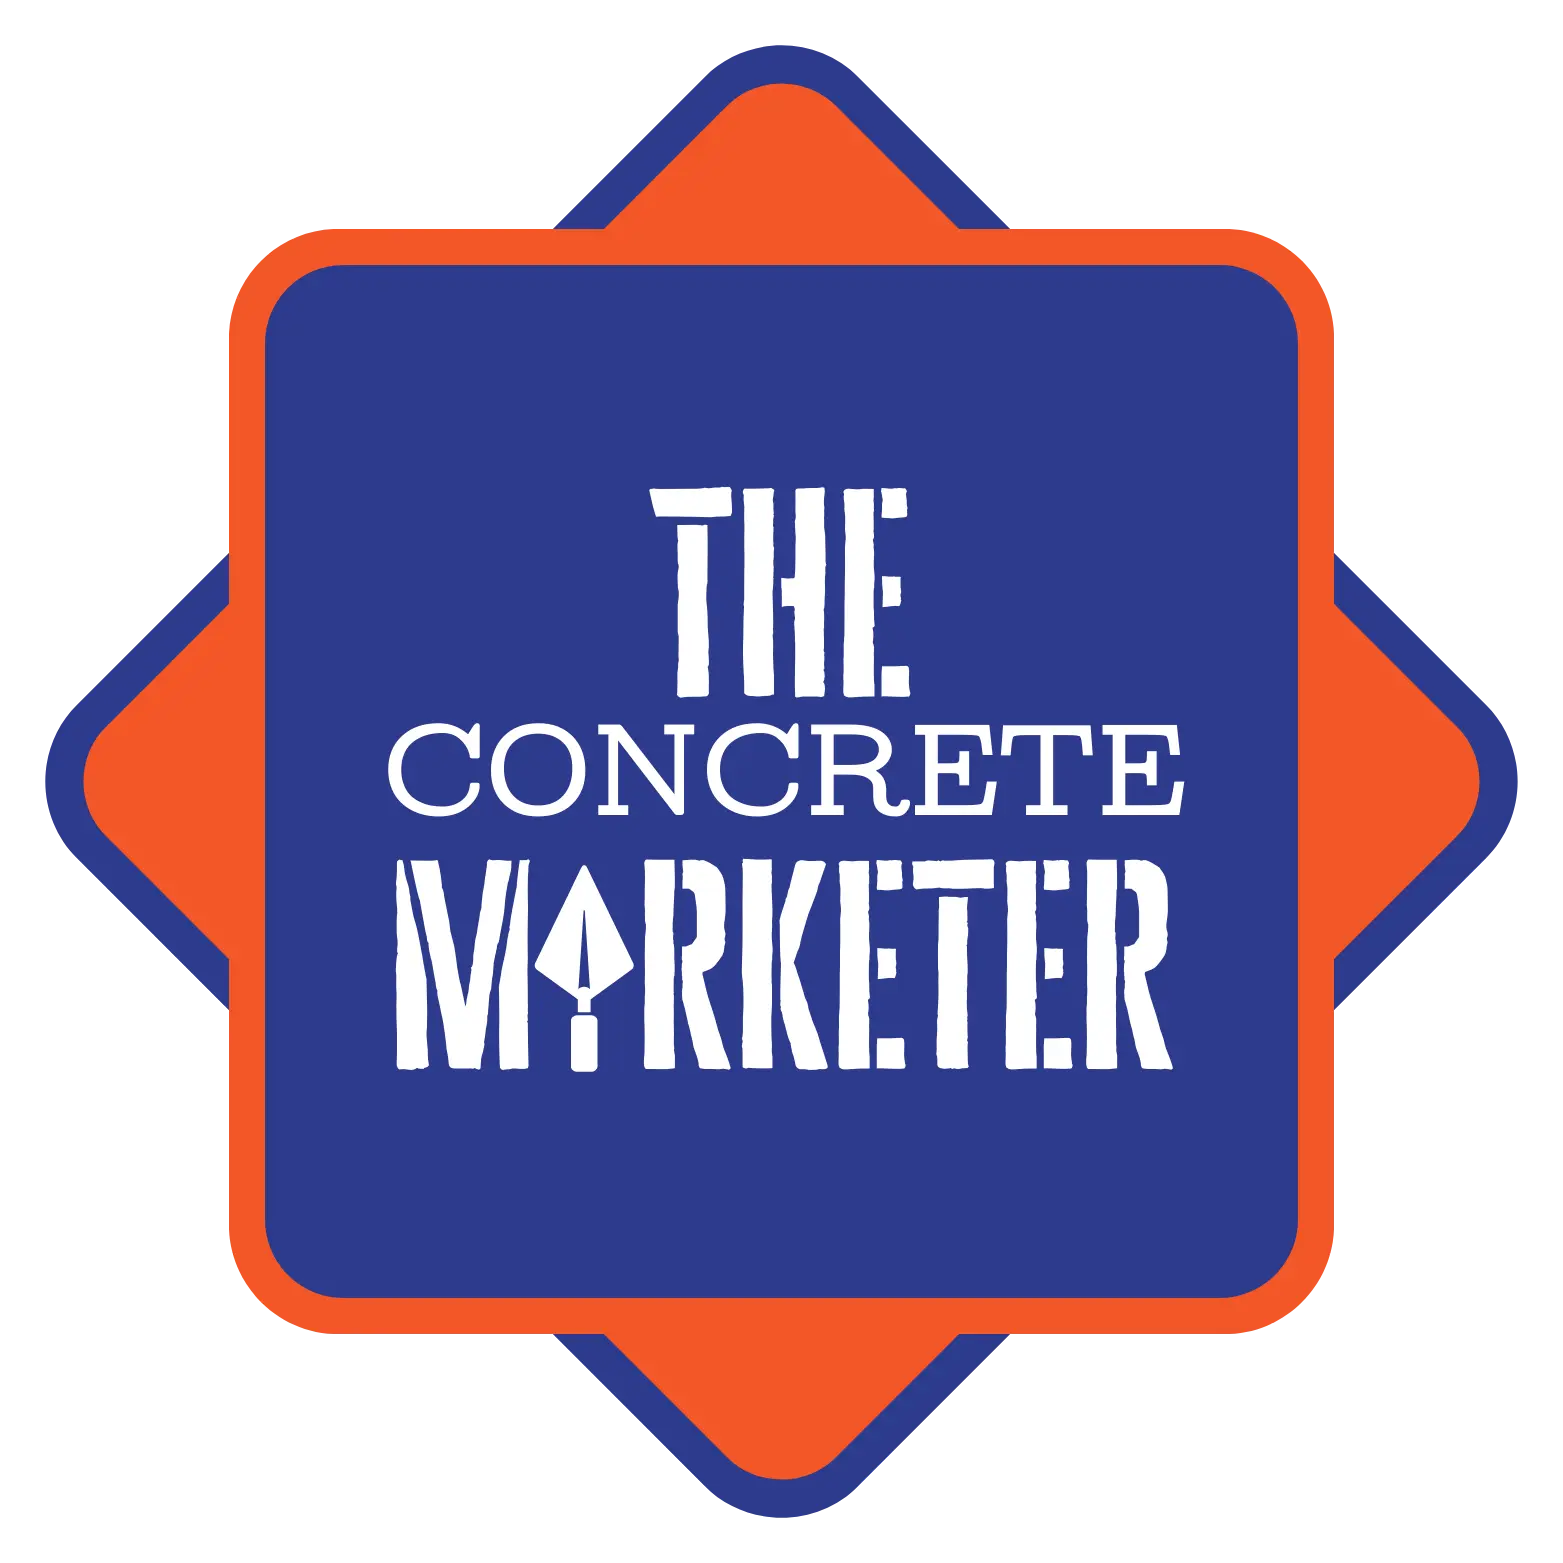 theconcretemarketer.com logo